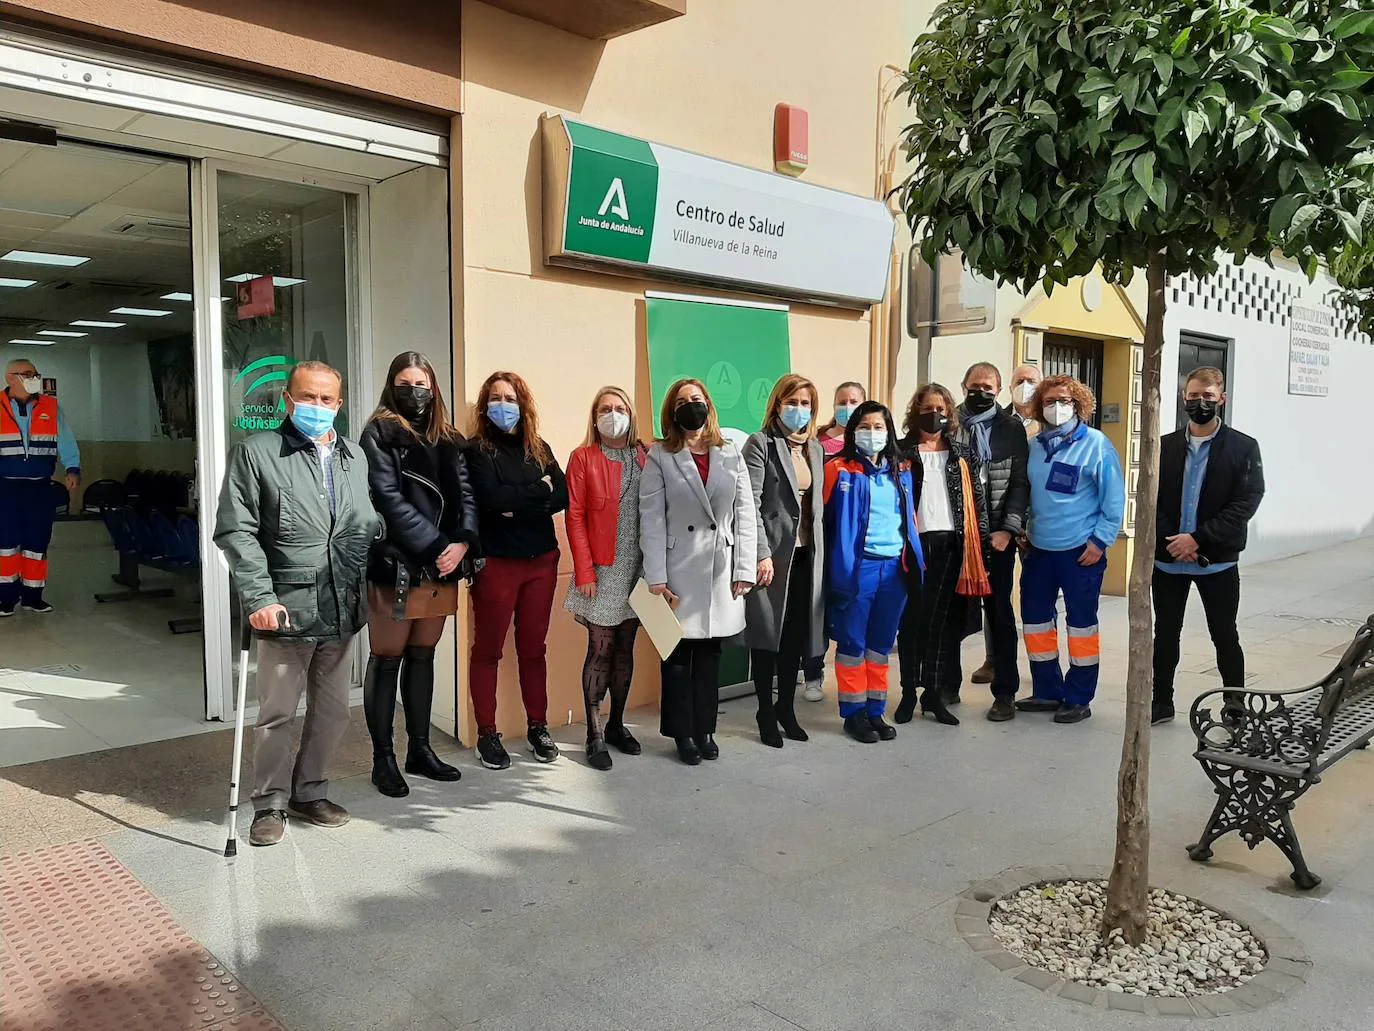 Salud y Familias invierte de 51.304 euros en el Centro de Salud de Villanueva de la Reina